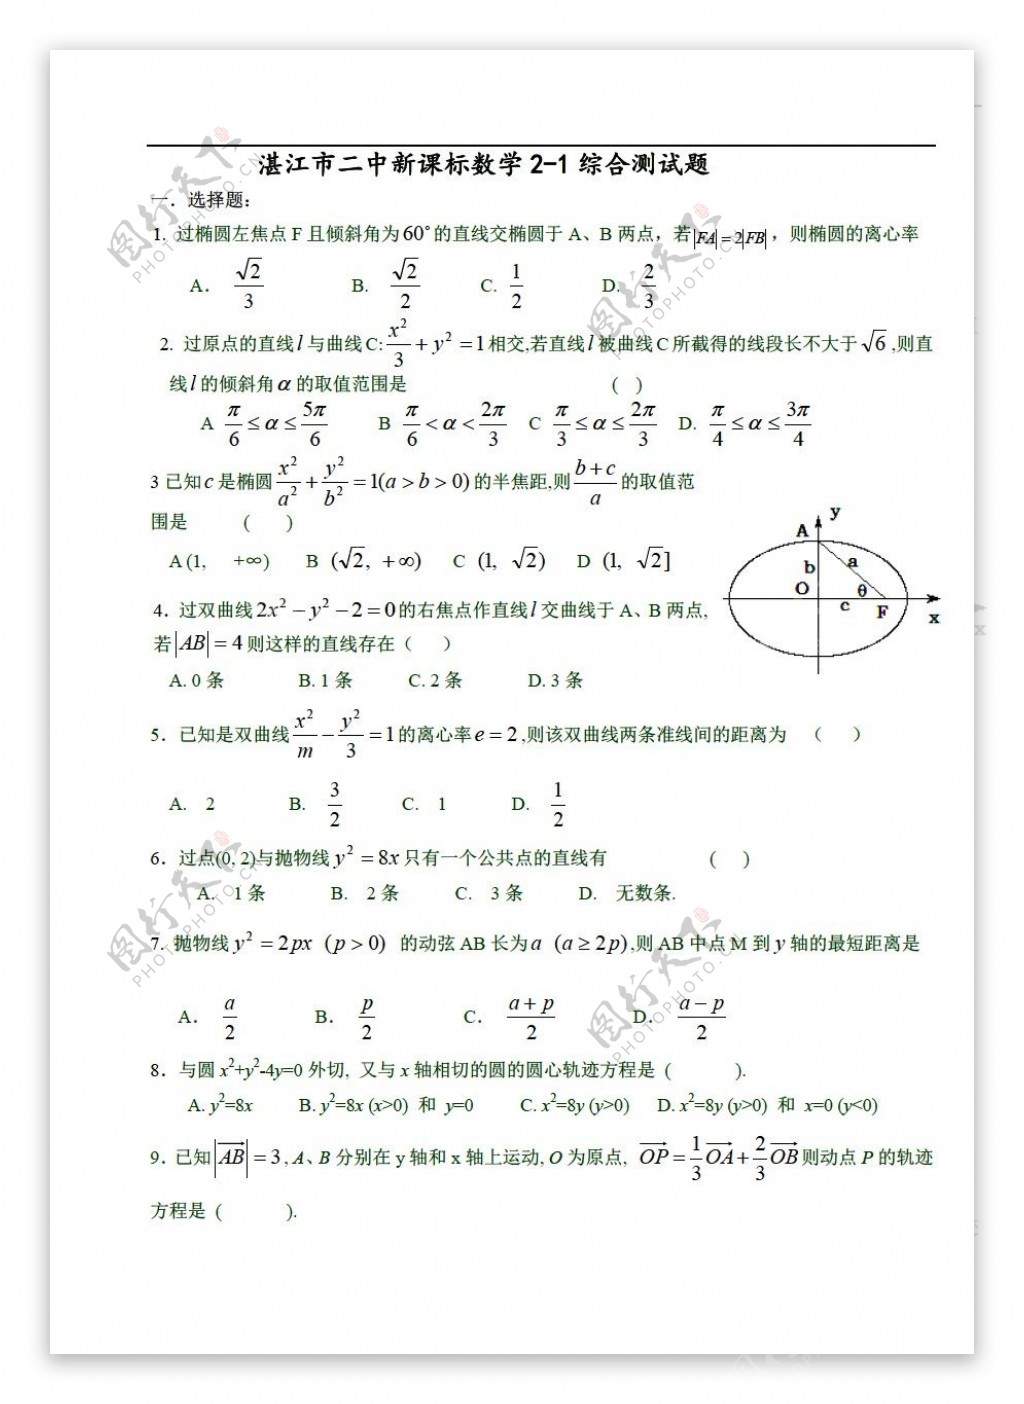 数学人教版湛江市二中新课标椭圆综合测试题